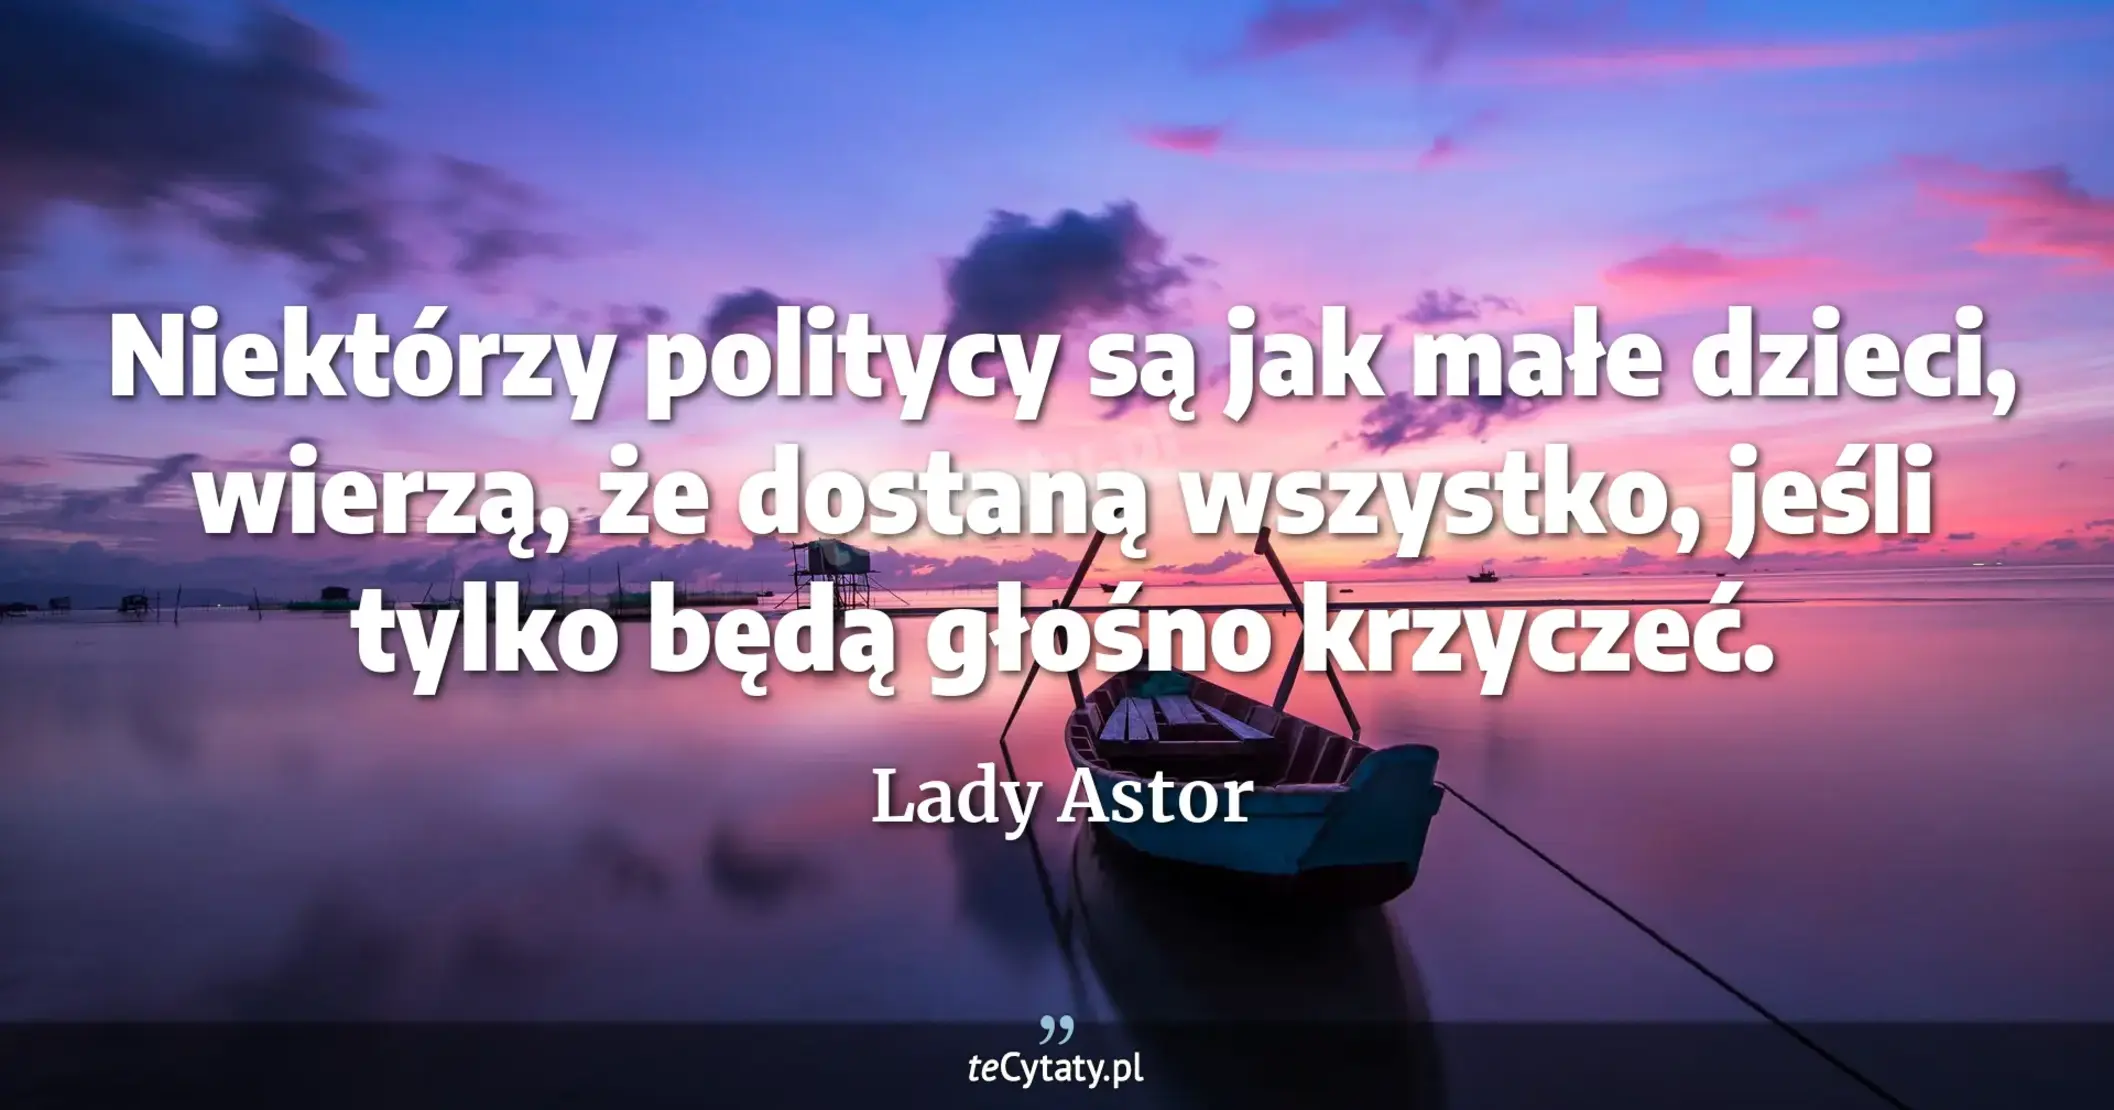 Niektórzy politycy są jak małe dzieci, wierzą, że dostaną wszystko, jeśli tylko będą głośno krzyczeć. - Lady Astor